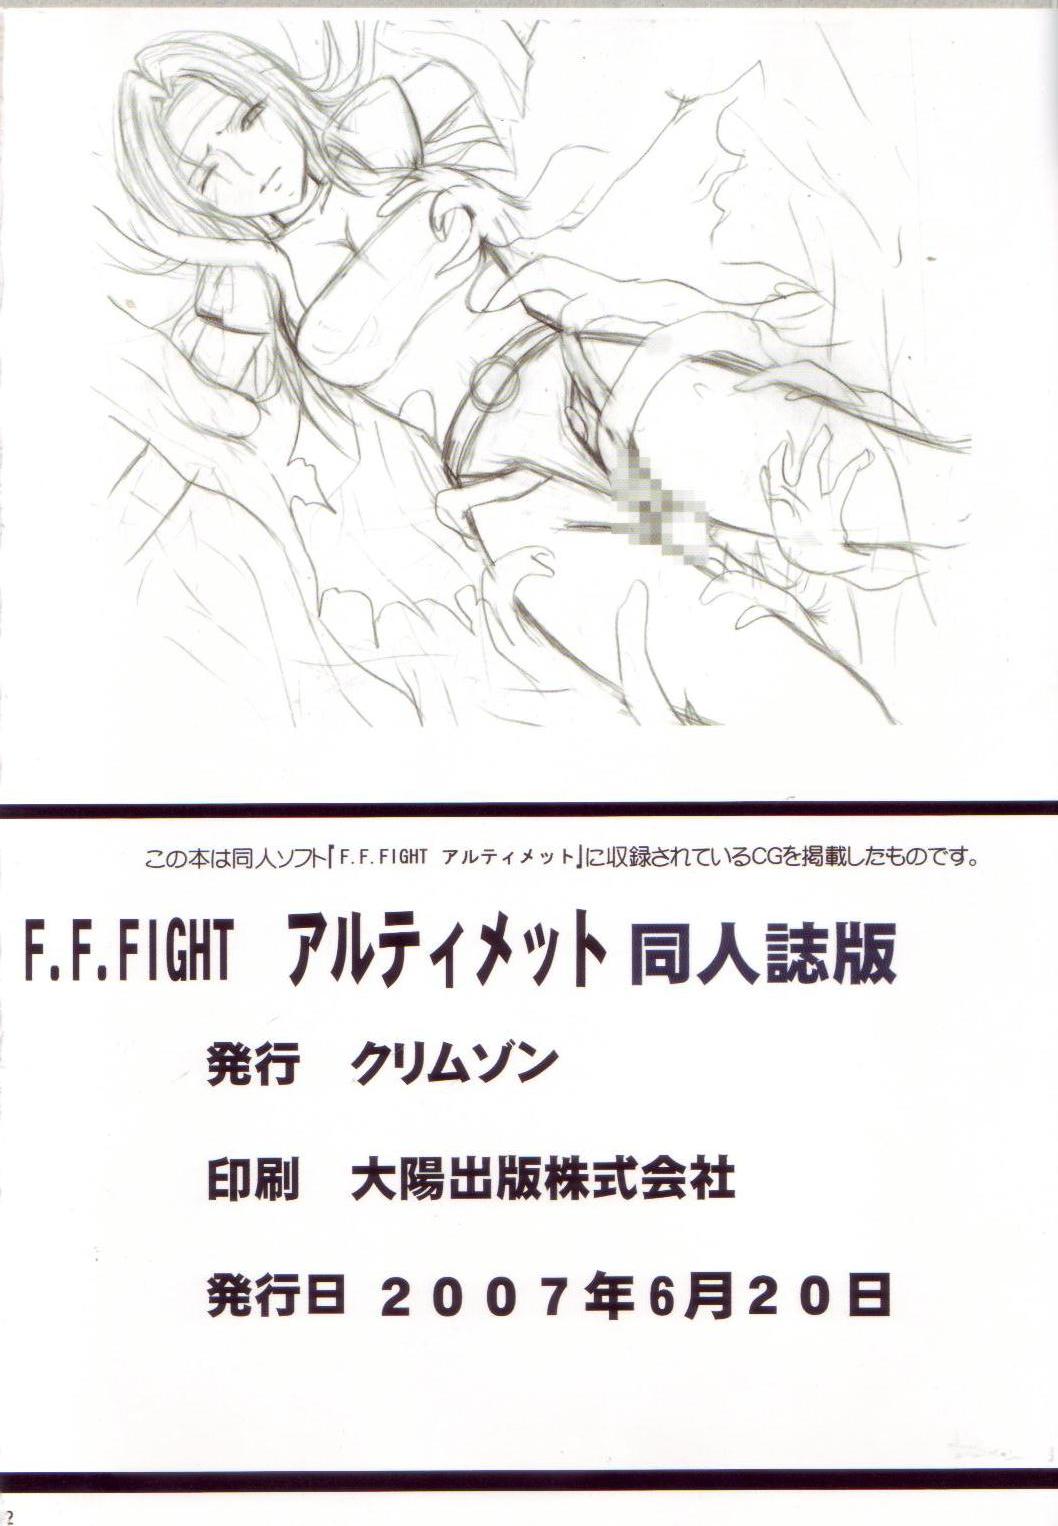 [Crimson Comics] F.F FIGHT ULTIMATE page 51 full